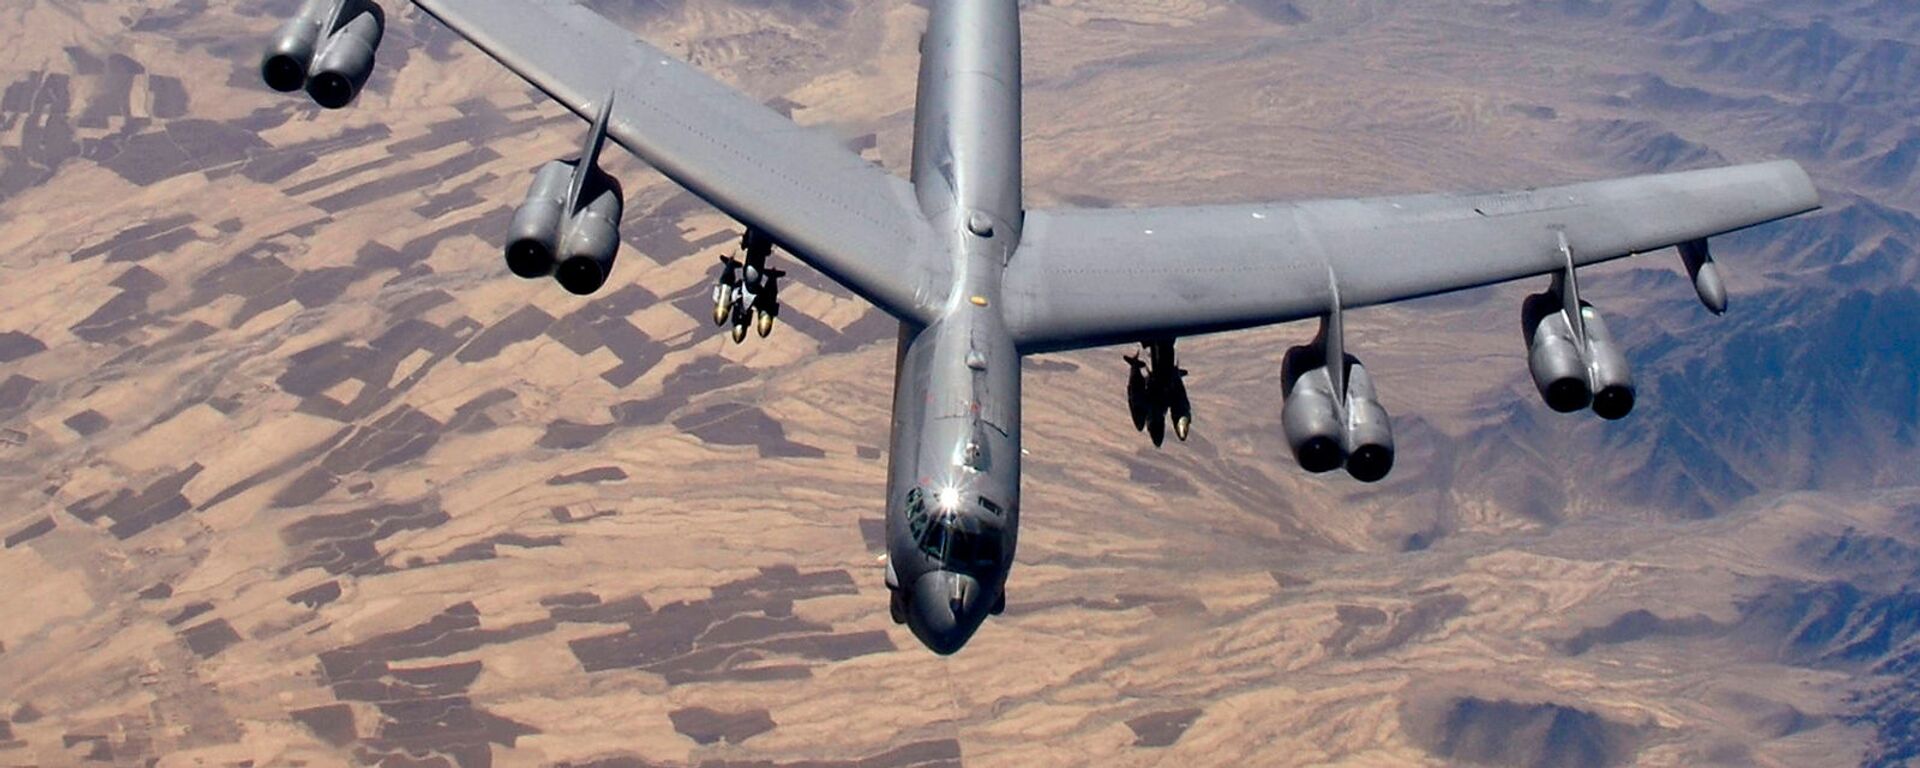 Бомбардировщик B-52 Stratofortress готовится к дозаправке (9 февраля 2006). Афганистан - Sputnik Армения, 1920, 08.03.2021